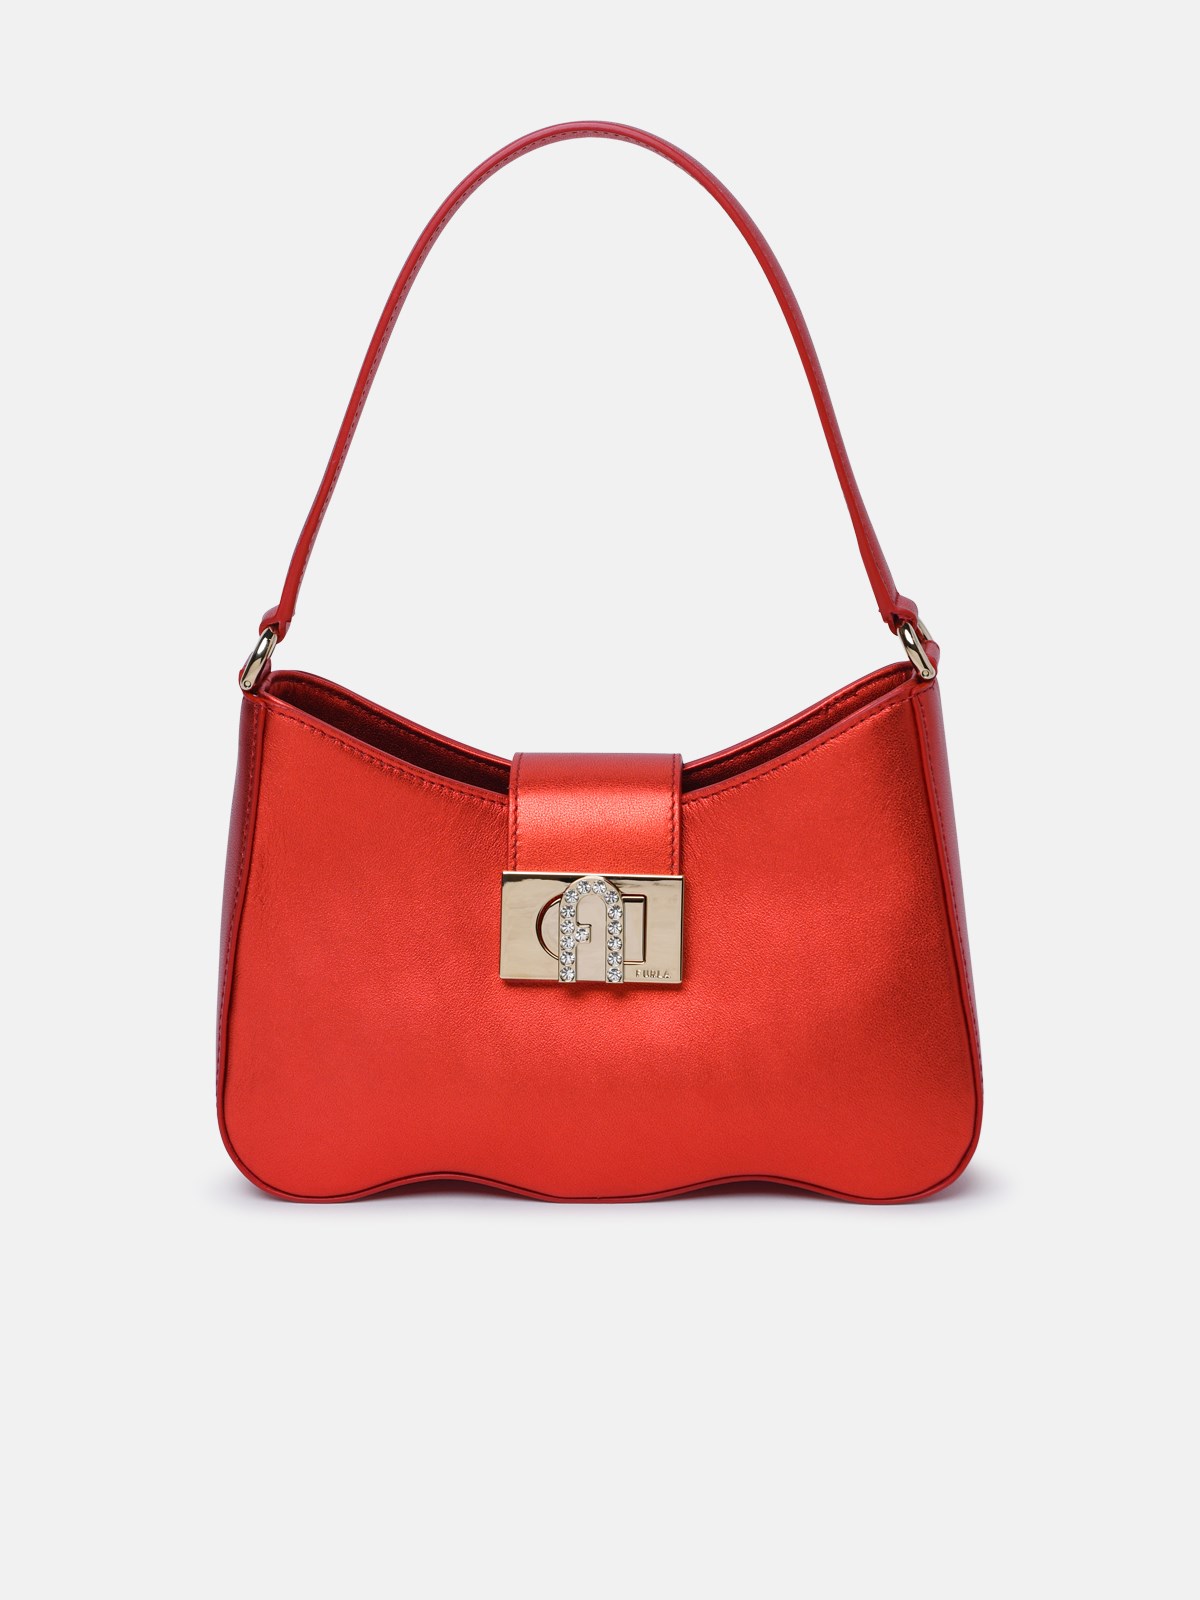 Furla 1927 Venetian Red Leather Bag